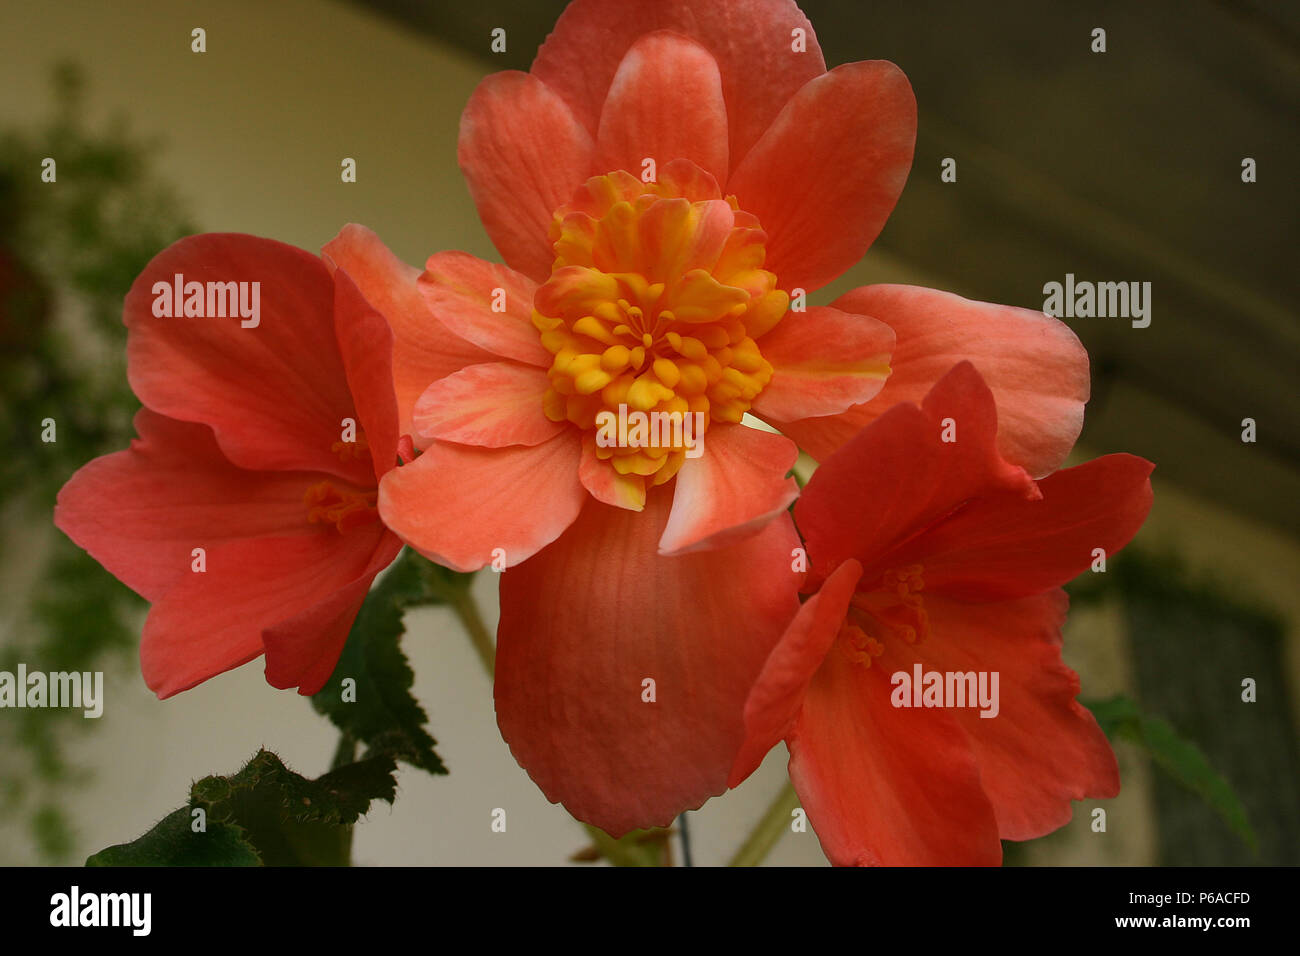 Close up of orange Begonia flower Stock Photo